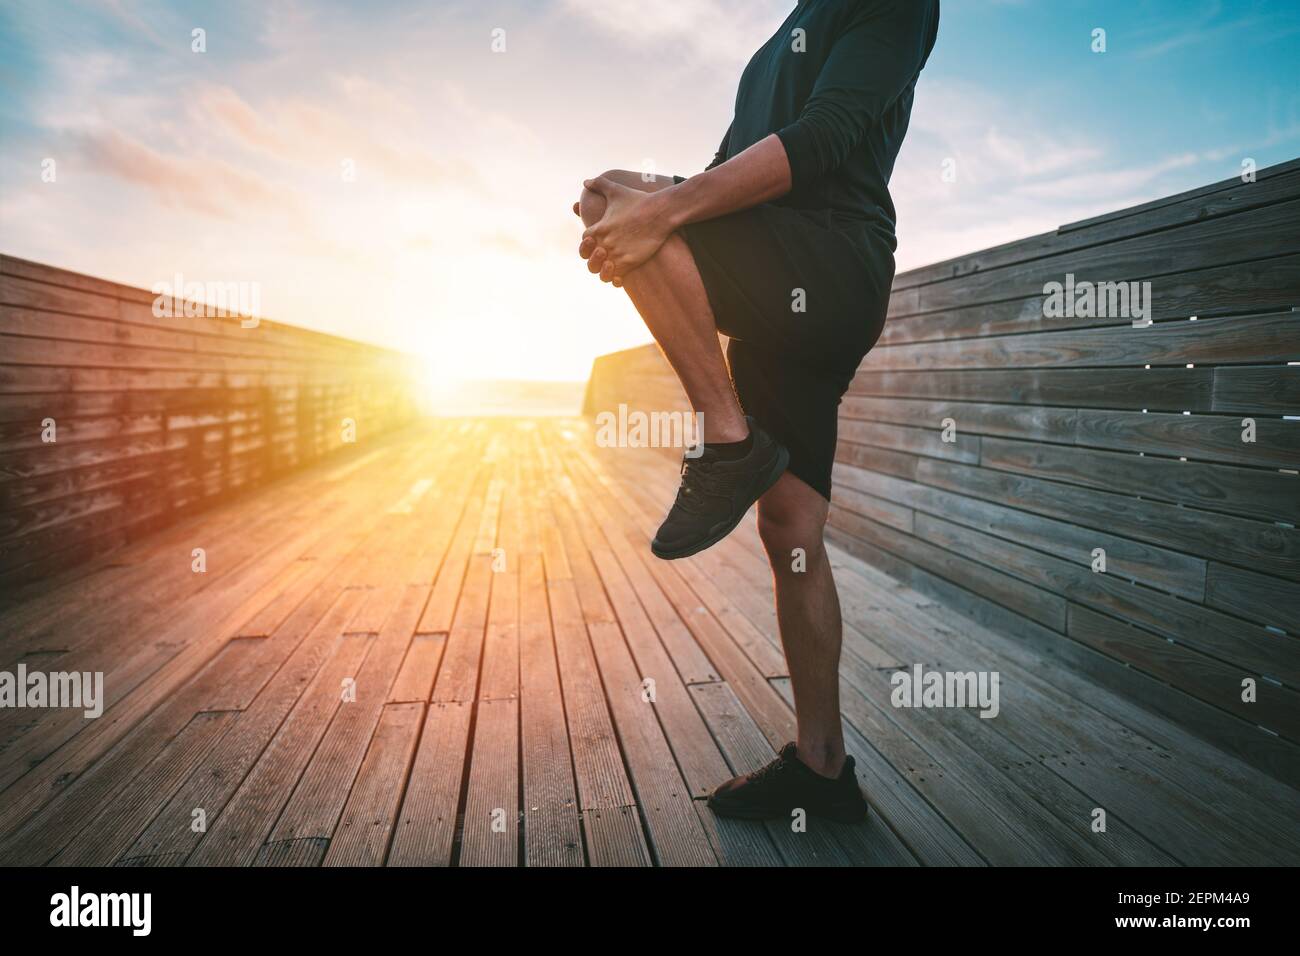 Gesunder junger Mann, der sich vor dem Training im Freien bei Sonnenuntergang oder Sonnenaufgang die Beine streckt. Dehnung des Musculus gluteus maximus. Läufer bereitet sich auf den Lauf vor. Stockfoto